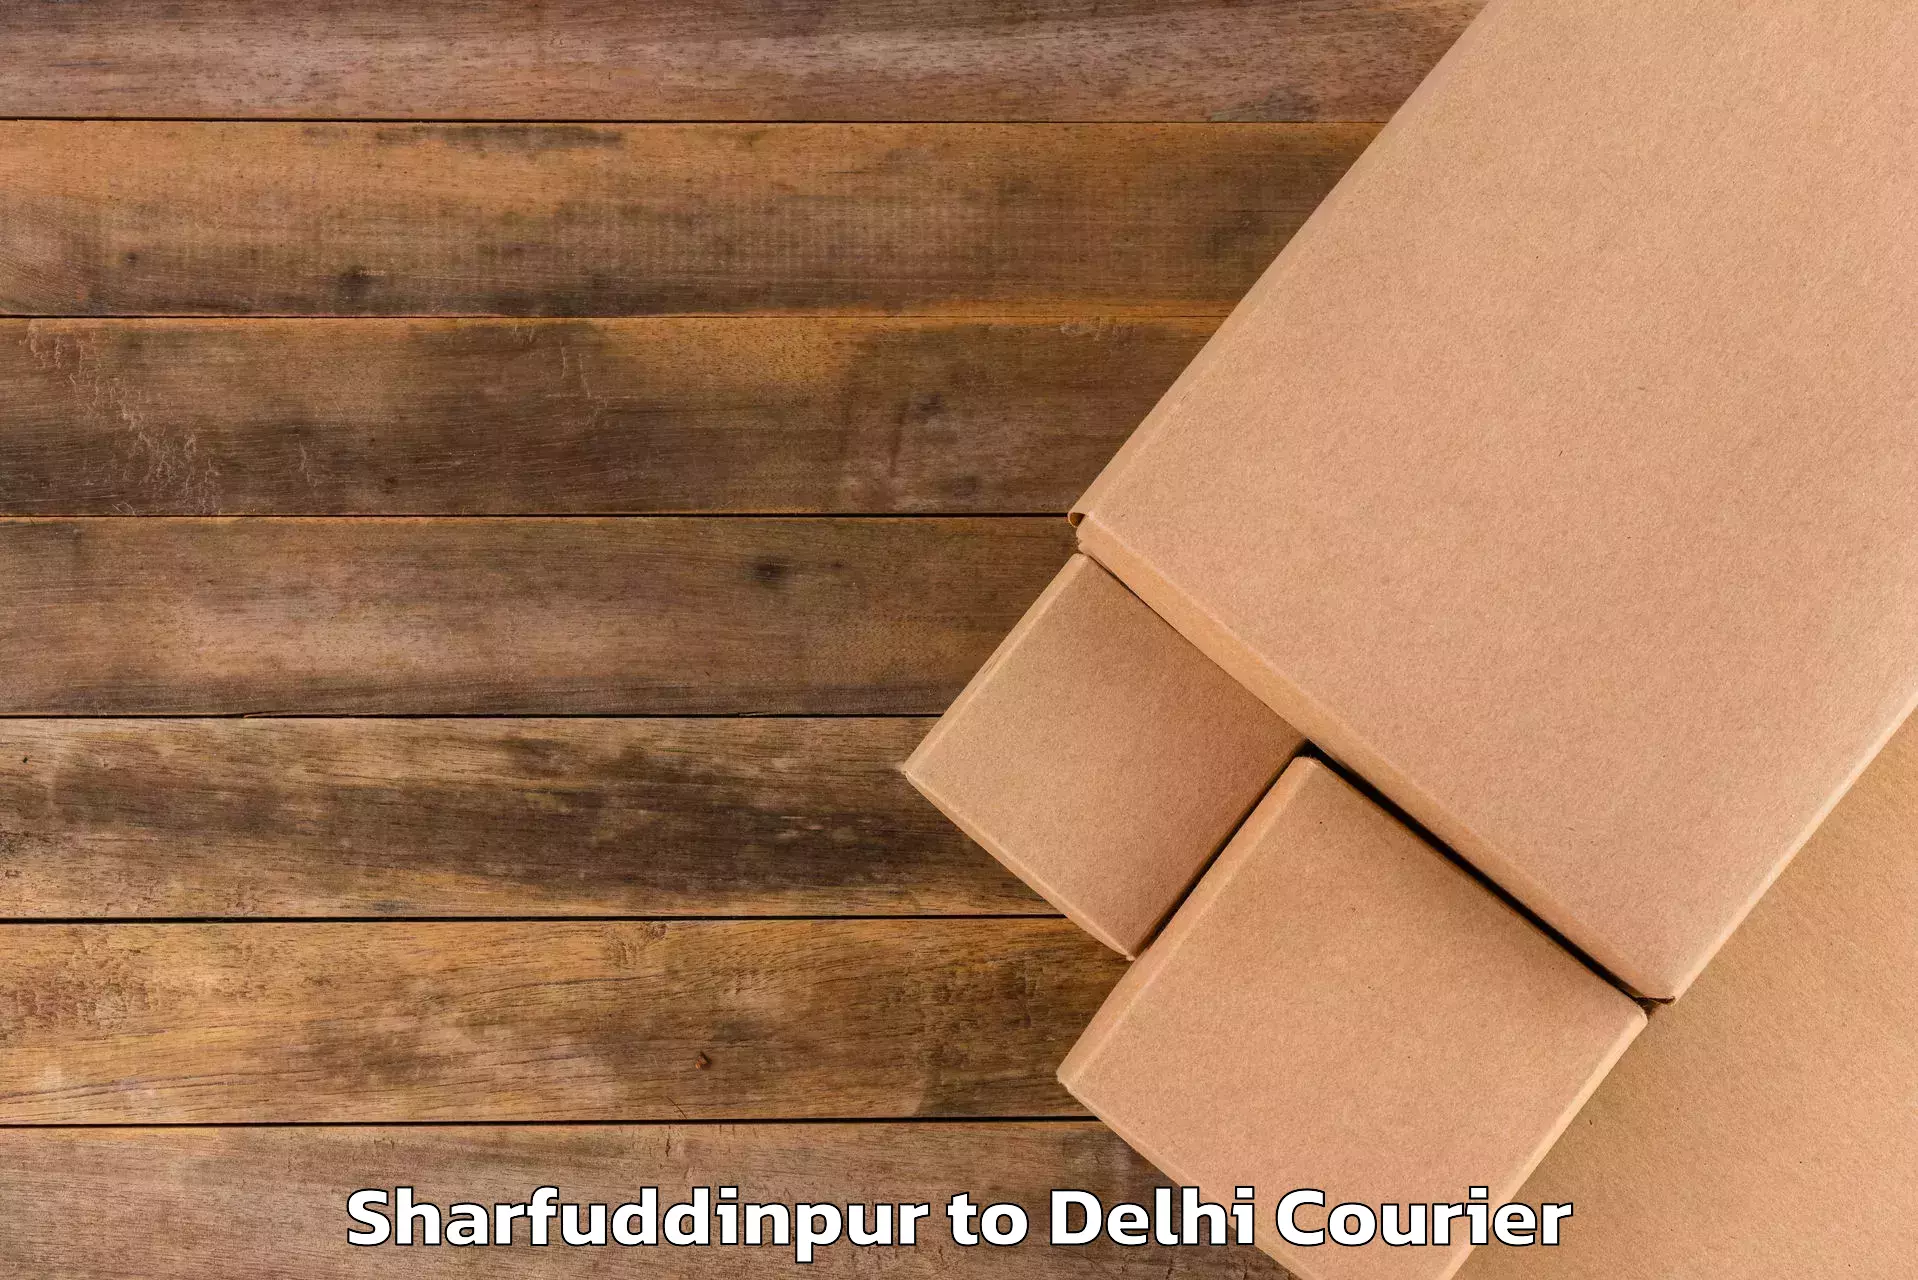 Reliable luggage courier Sharfuddinpur to Burari